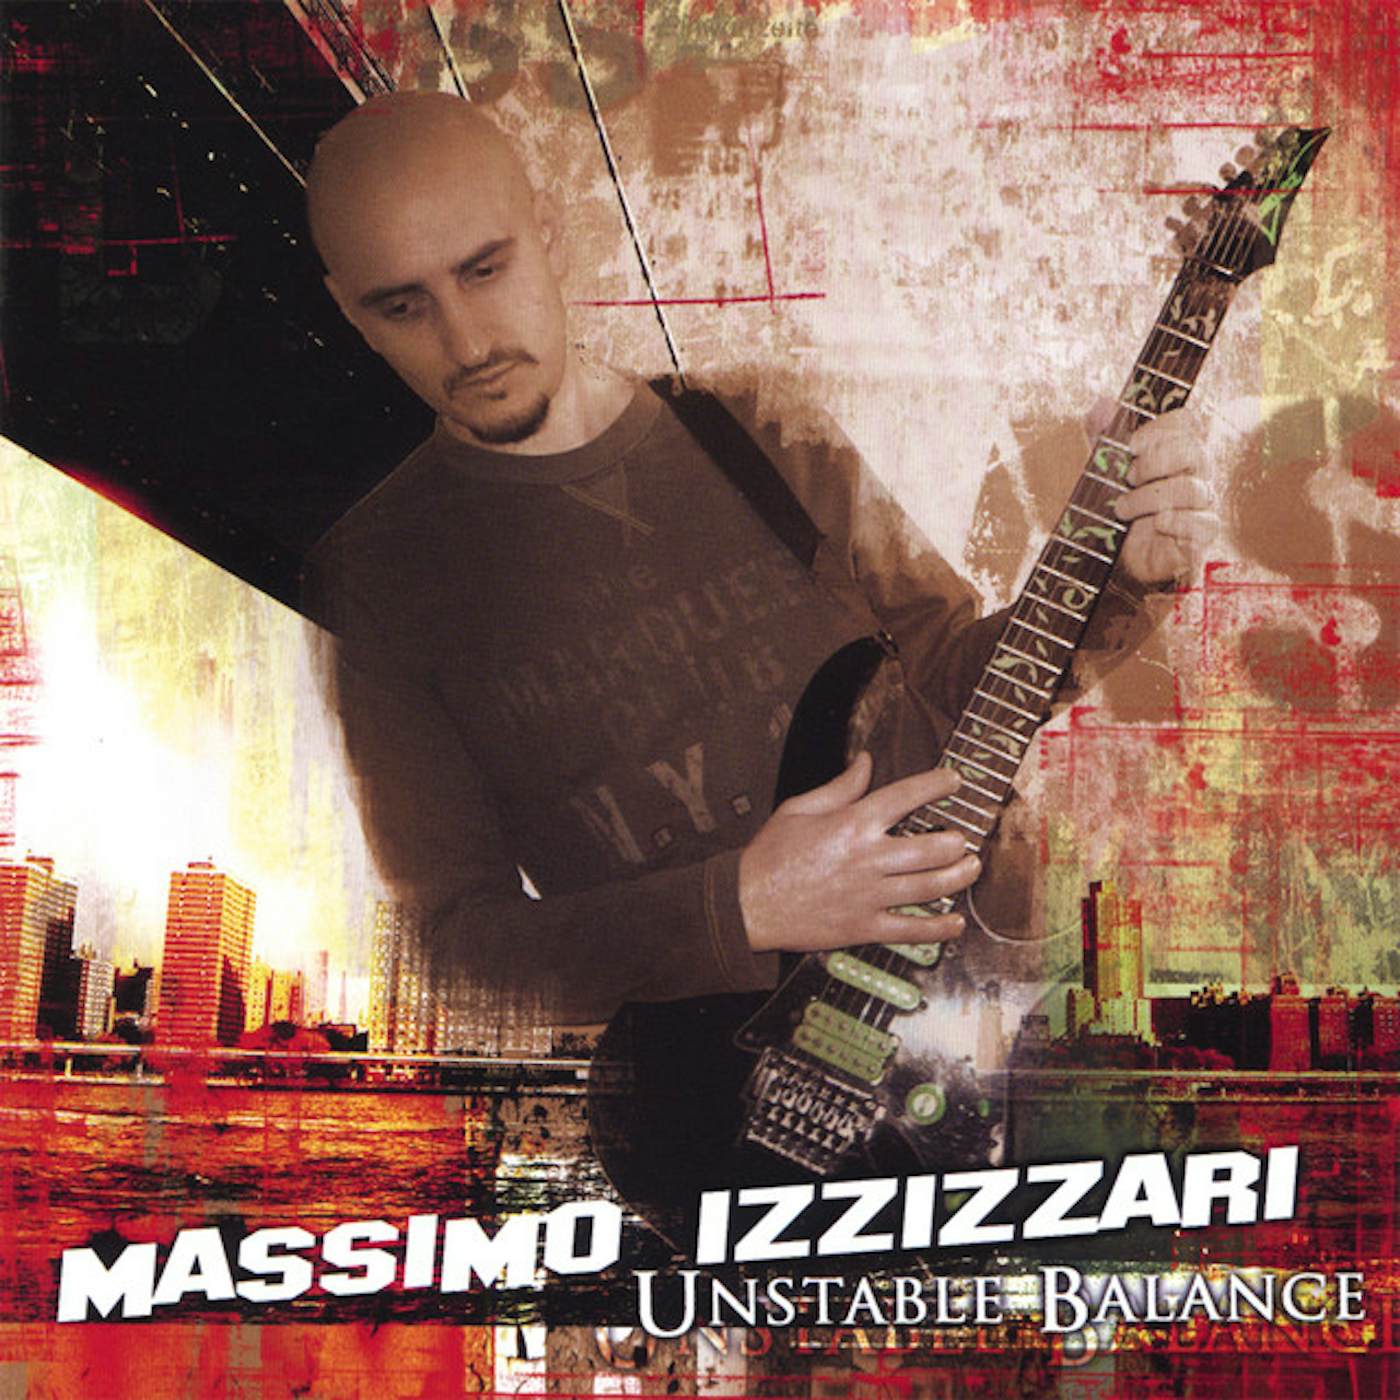 Massimo Izzizzari UNSTABLE BALANCE CD